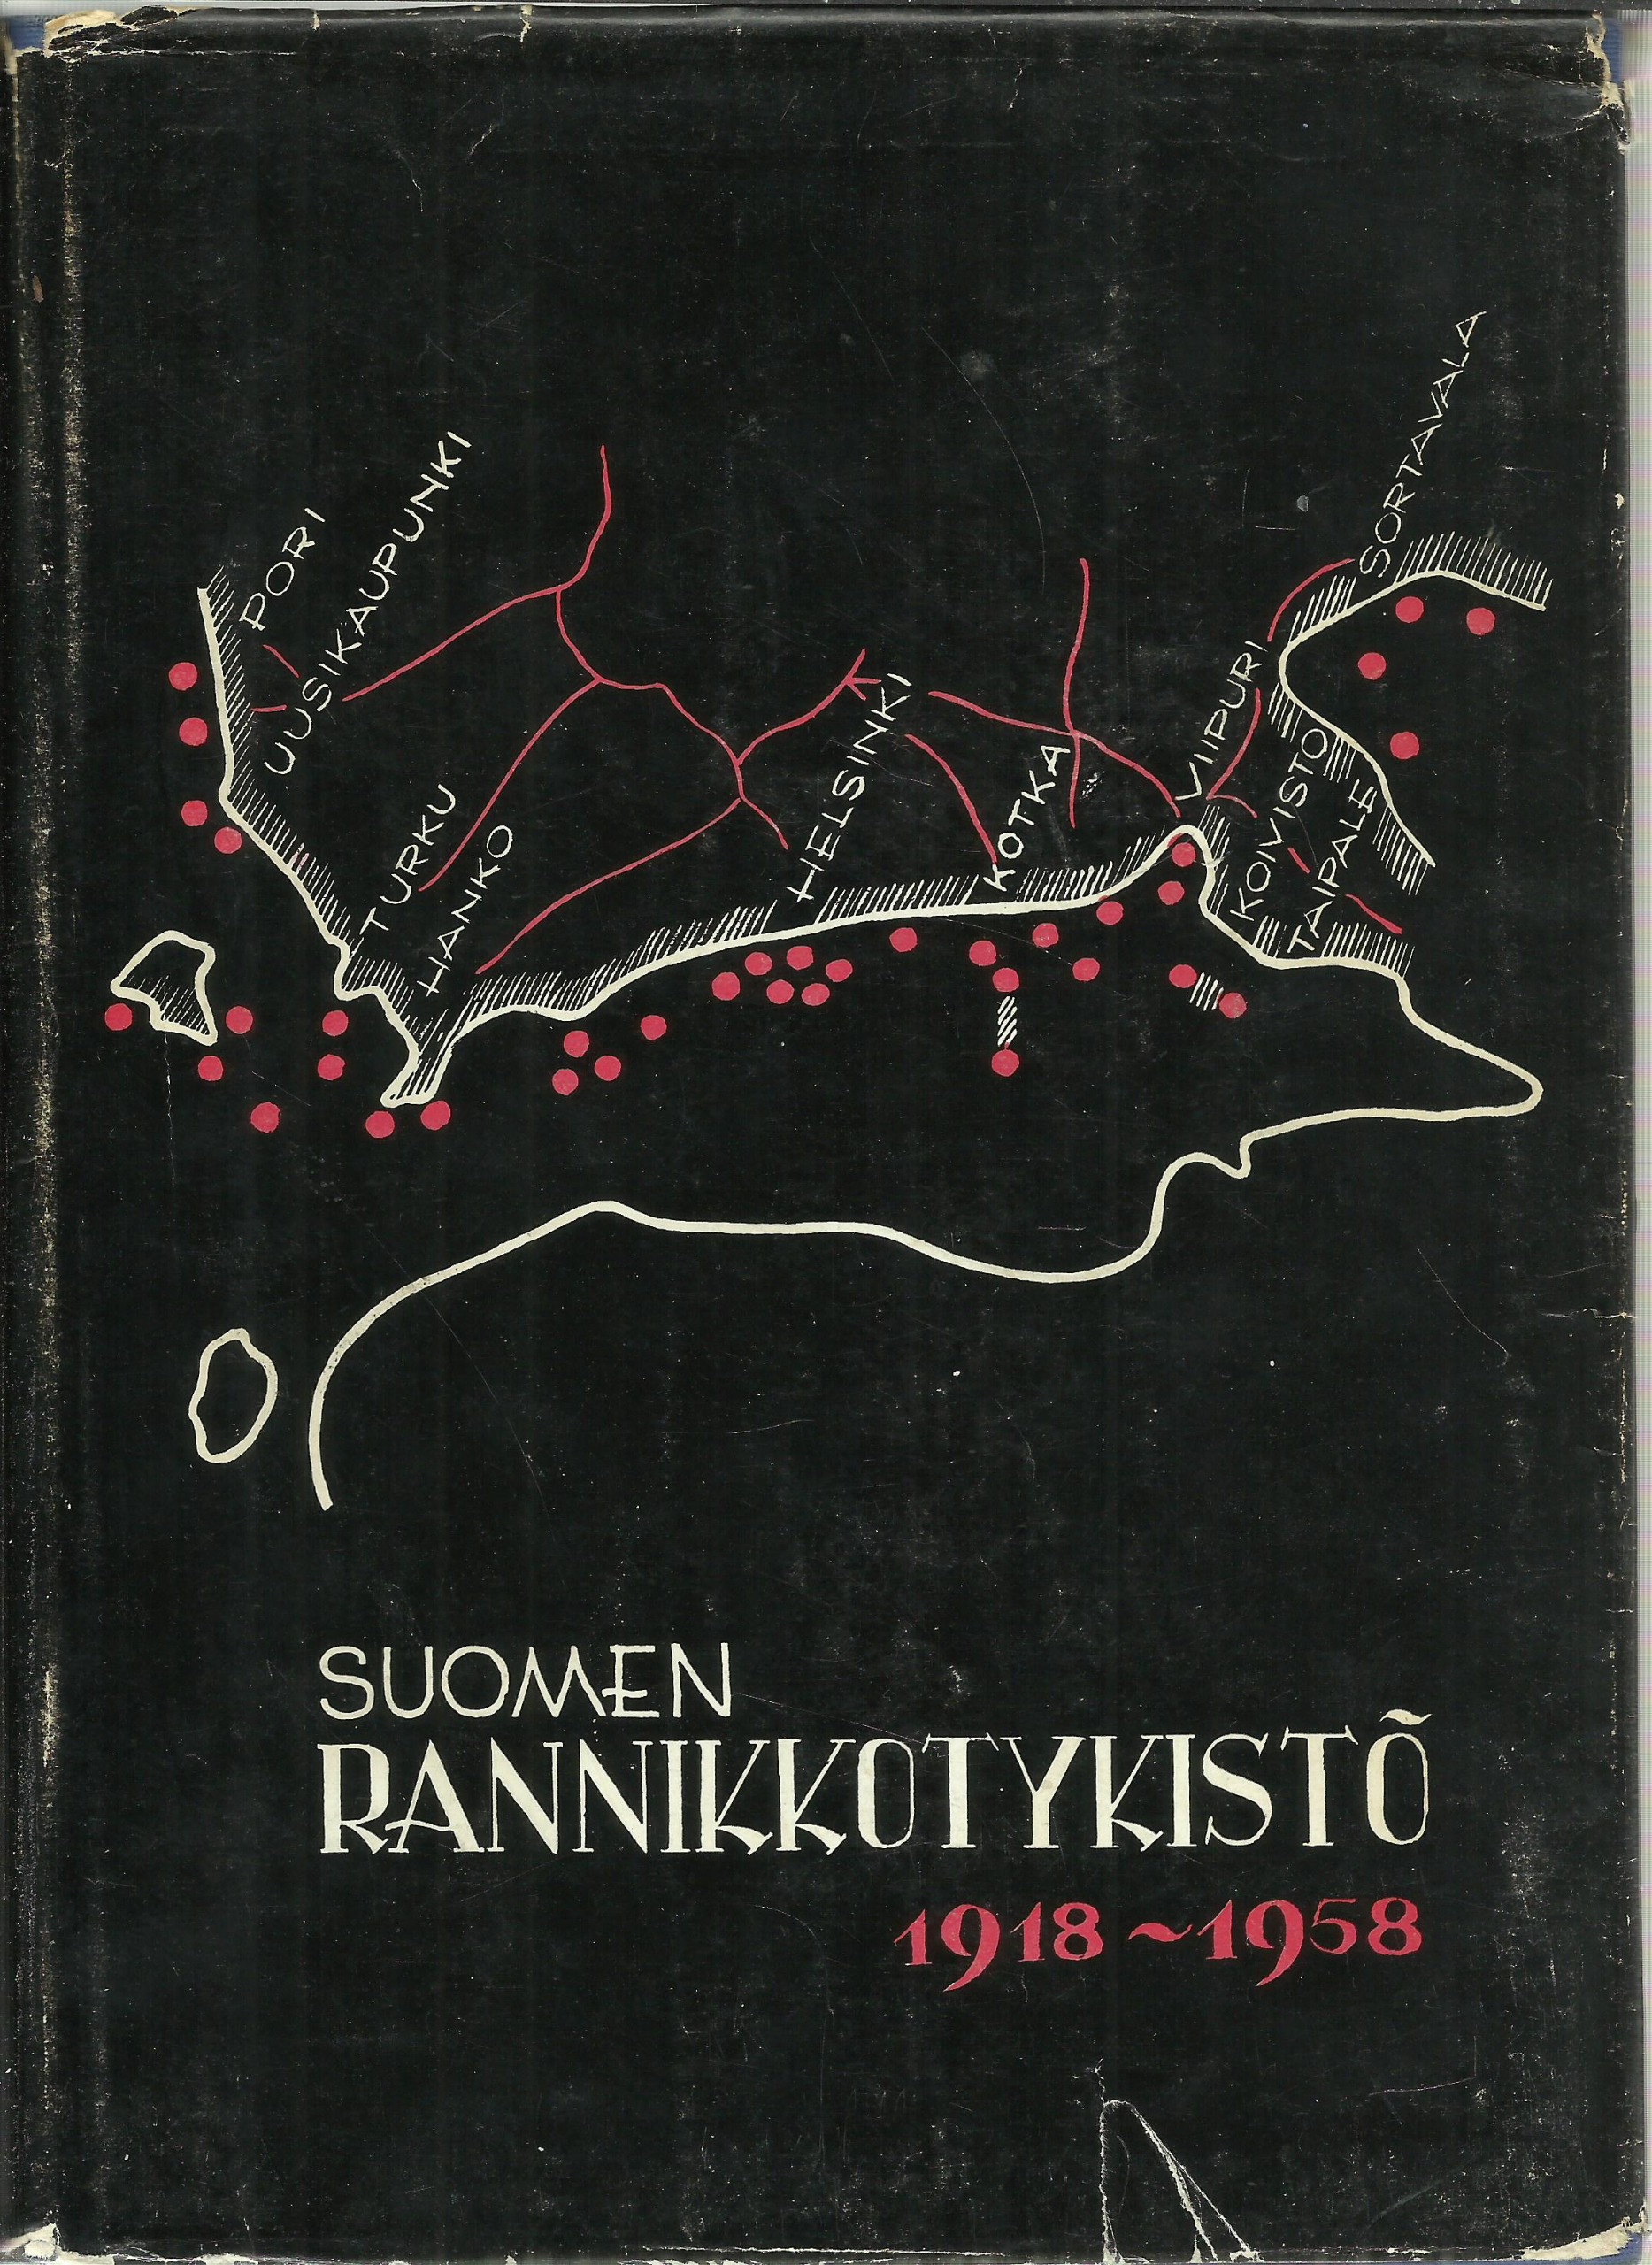 Suomen rannikkotykistö 1918-1958